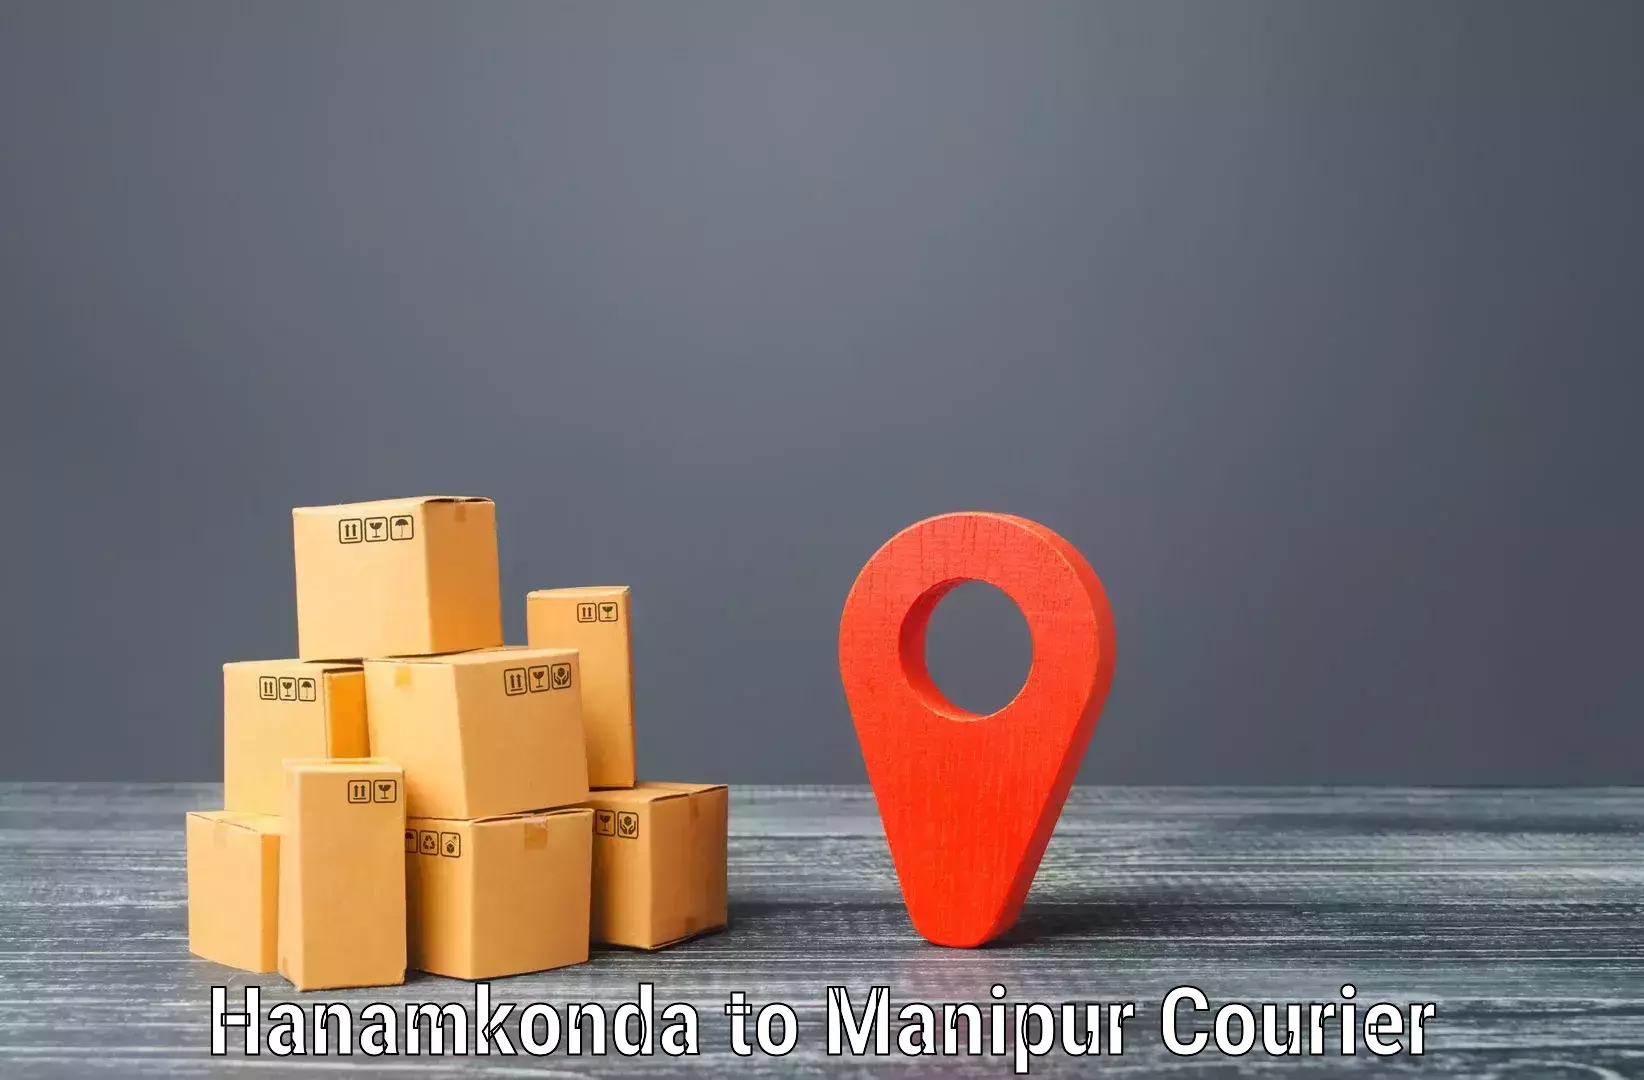 Bulk shipping discounts Hanamkonda to Moirang